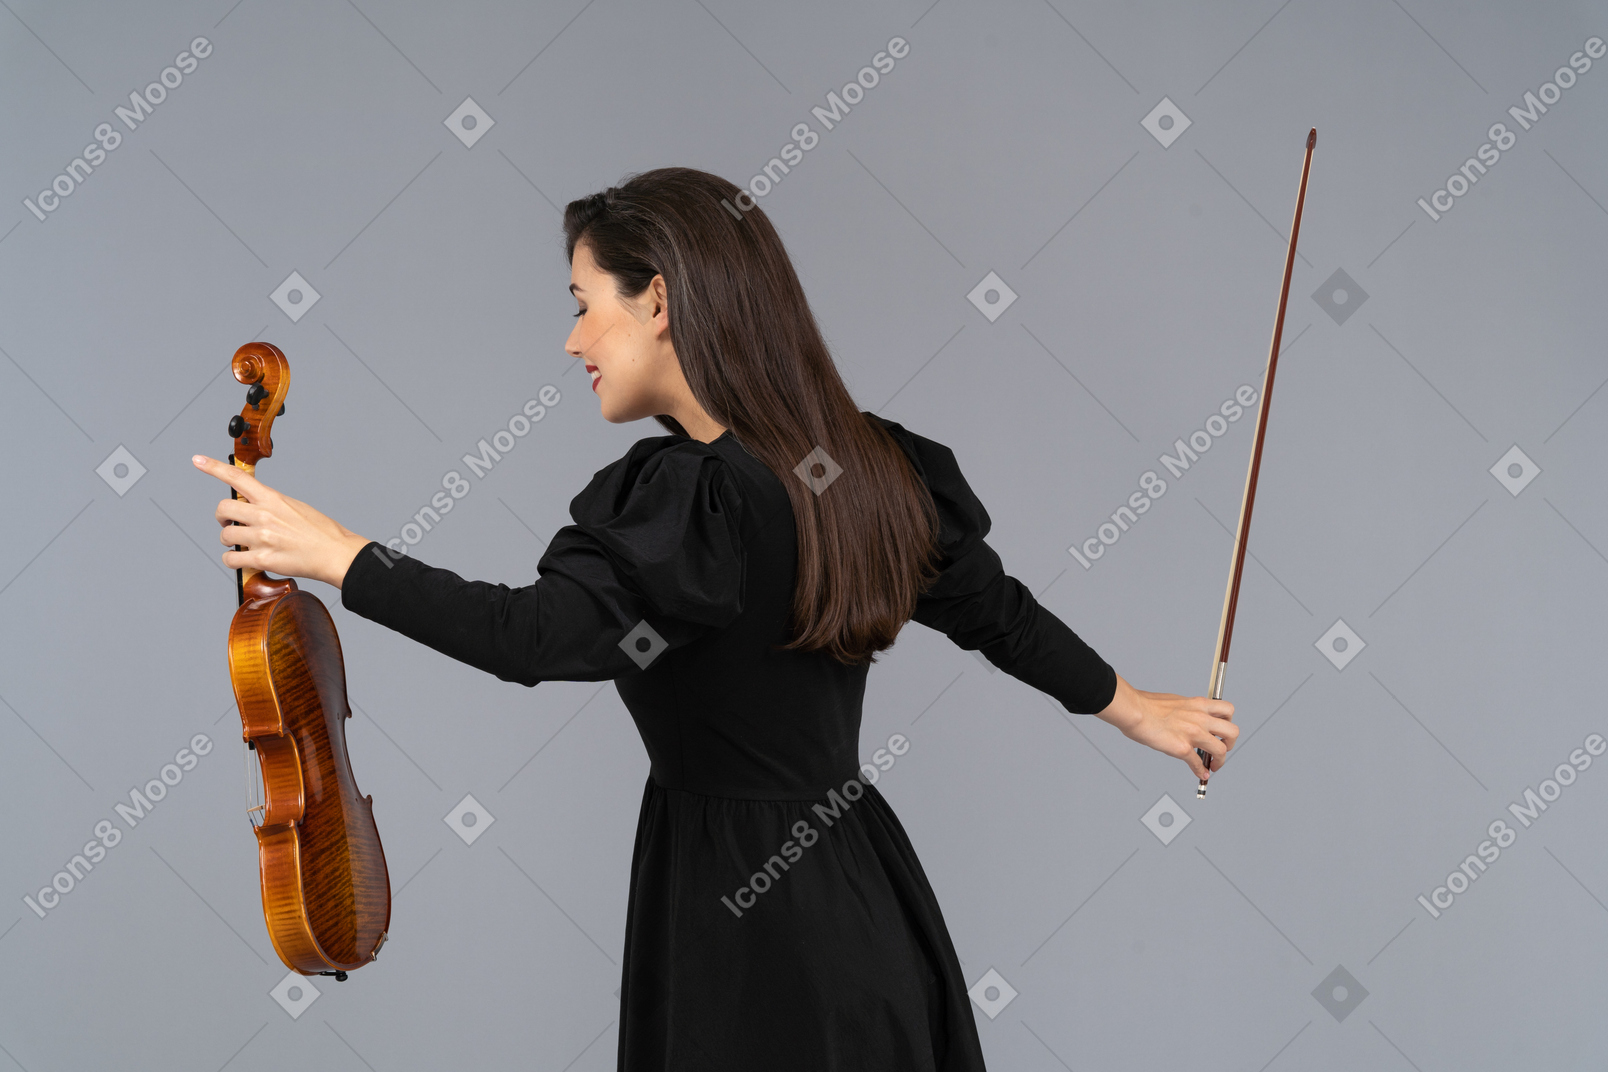 Трехчетвертный вид сзади на скрипачку в черном платье, делающую лук